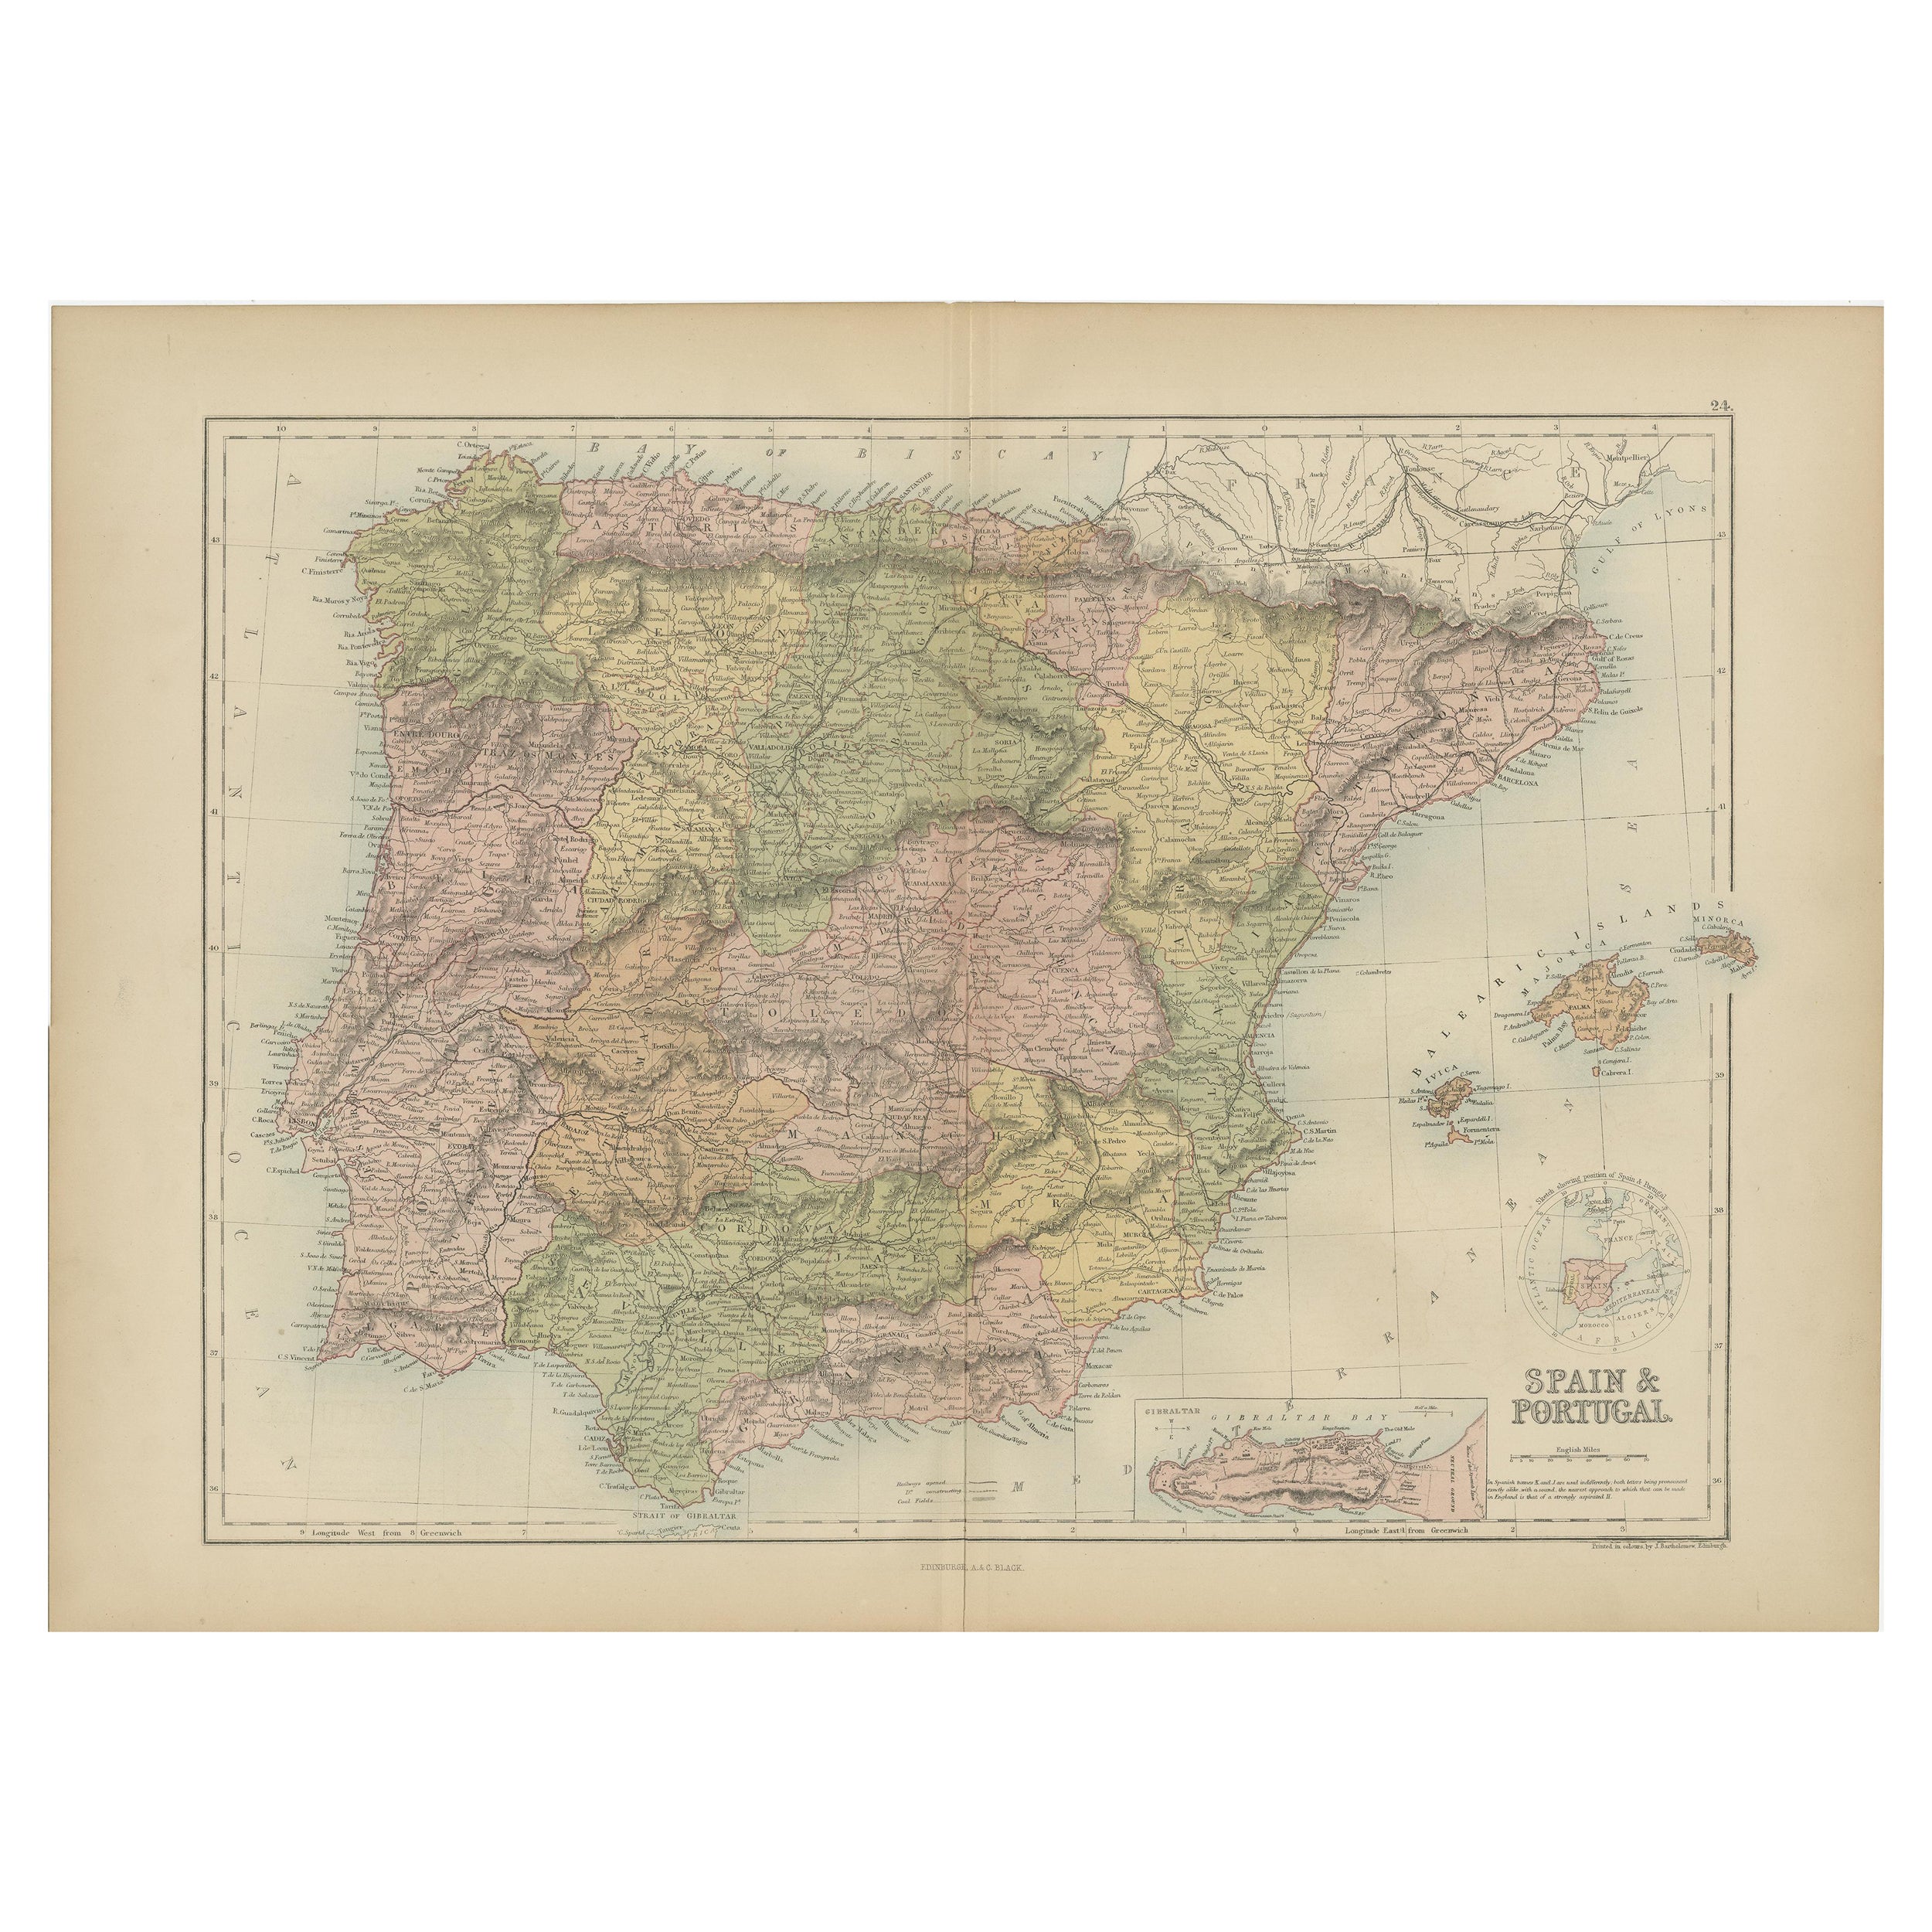 Carte ancienne d'Espagne et du Portugal par A & C. Black, 1870